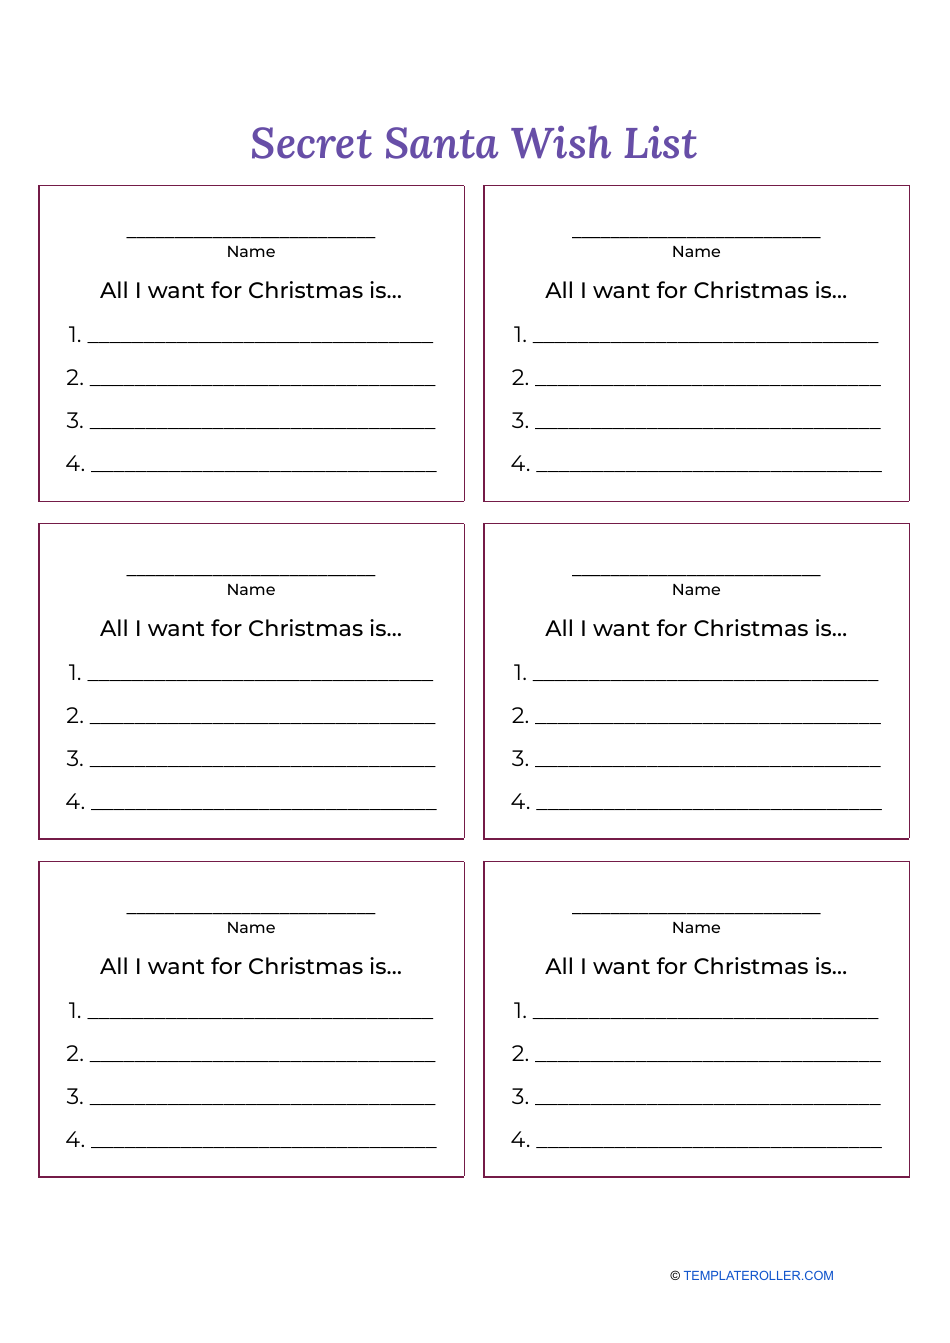 Secret Santa Wish List Template - Violet and Black Download Printable ...